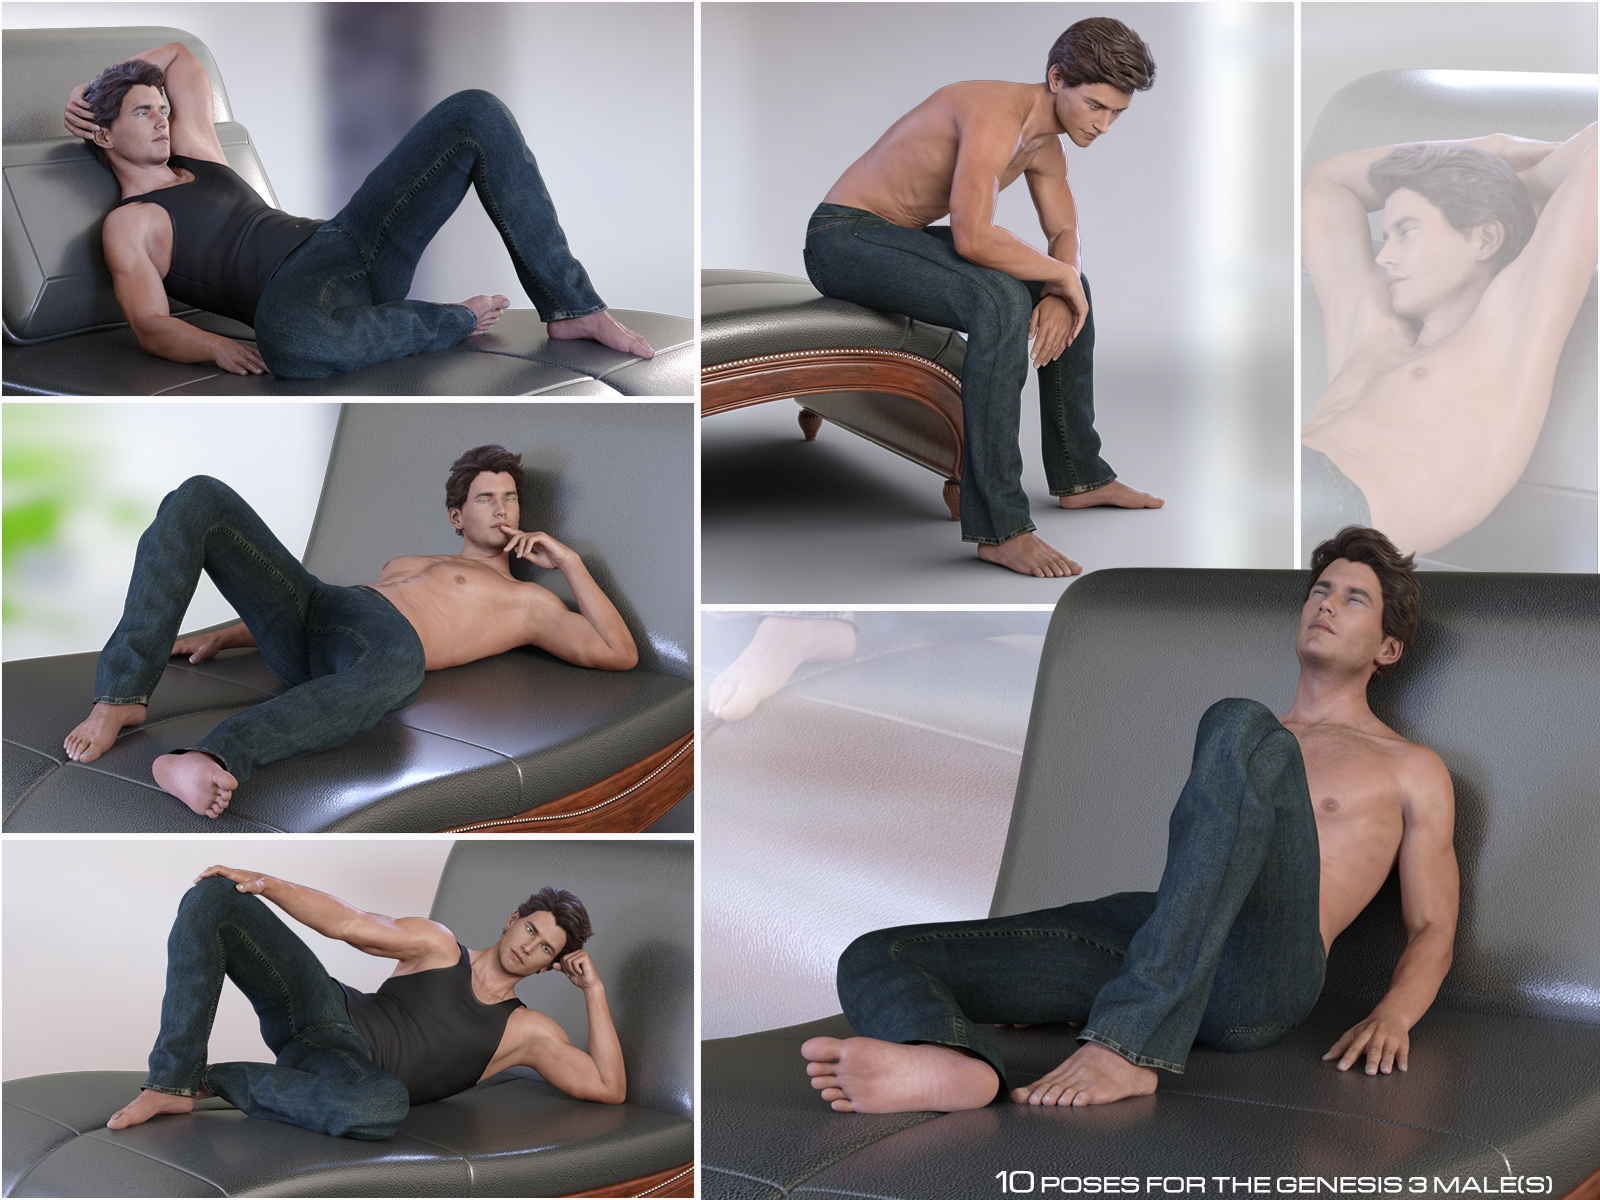 Z Chaise Lounge - Prop & Pose Collection by: Zeddicuss, 3D Models by Daz 3D